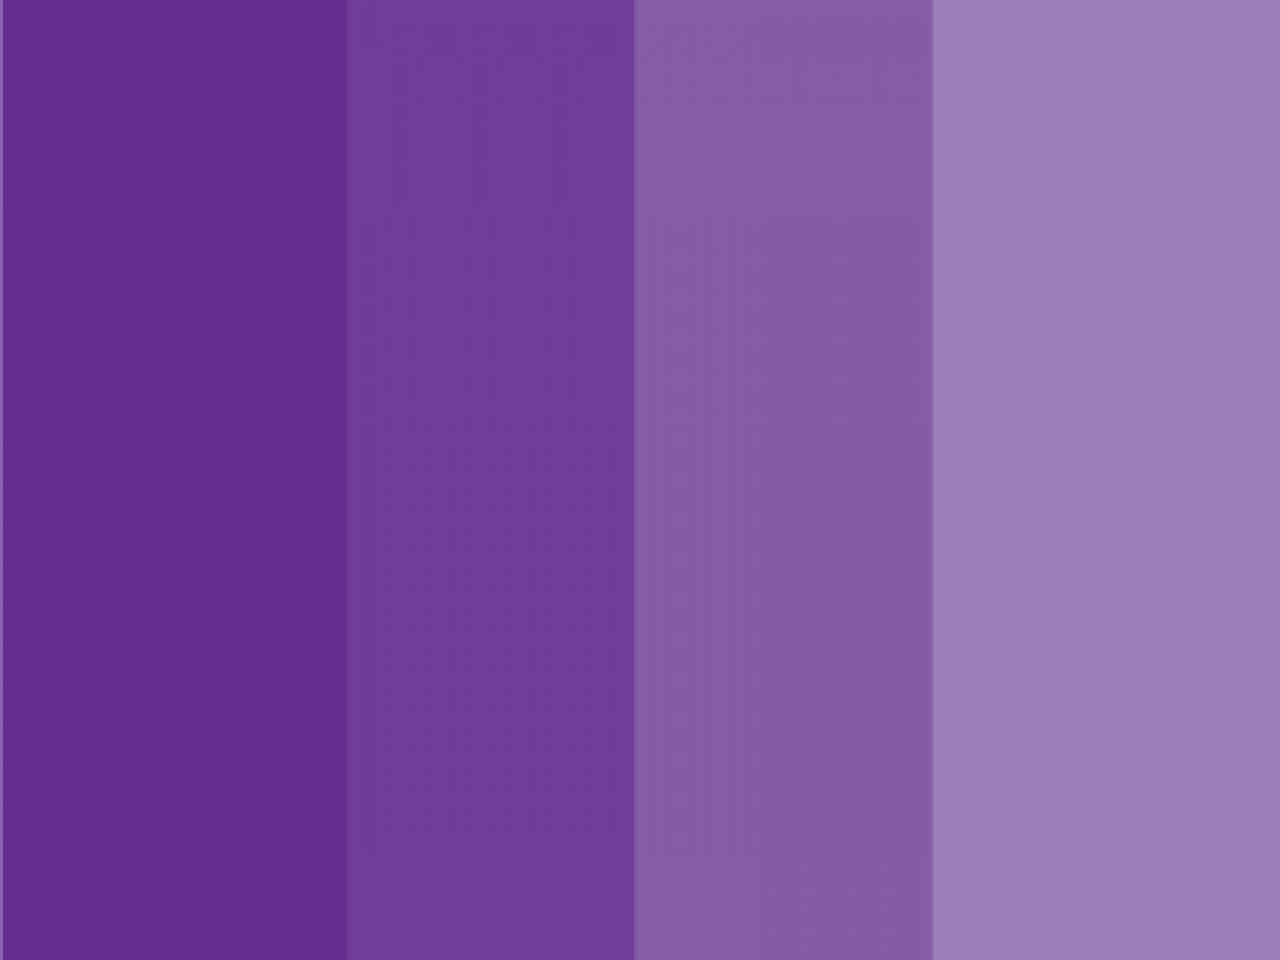 Розово фиолетовый цвет название. Фиолетовый цвет 8000ff. Индиго 4b0082. Палитра фиолетовых оттенков. Палитра цветов фиолетовый.